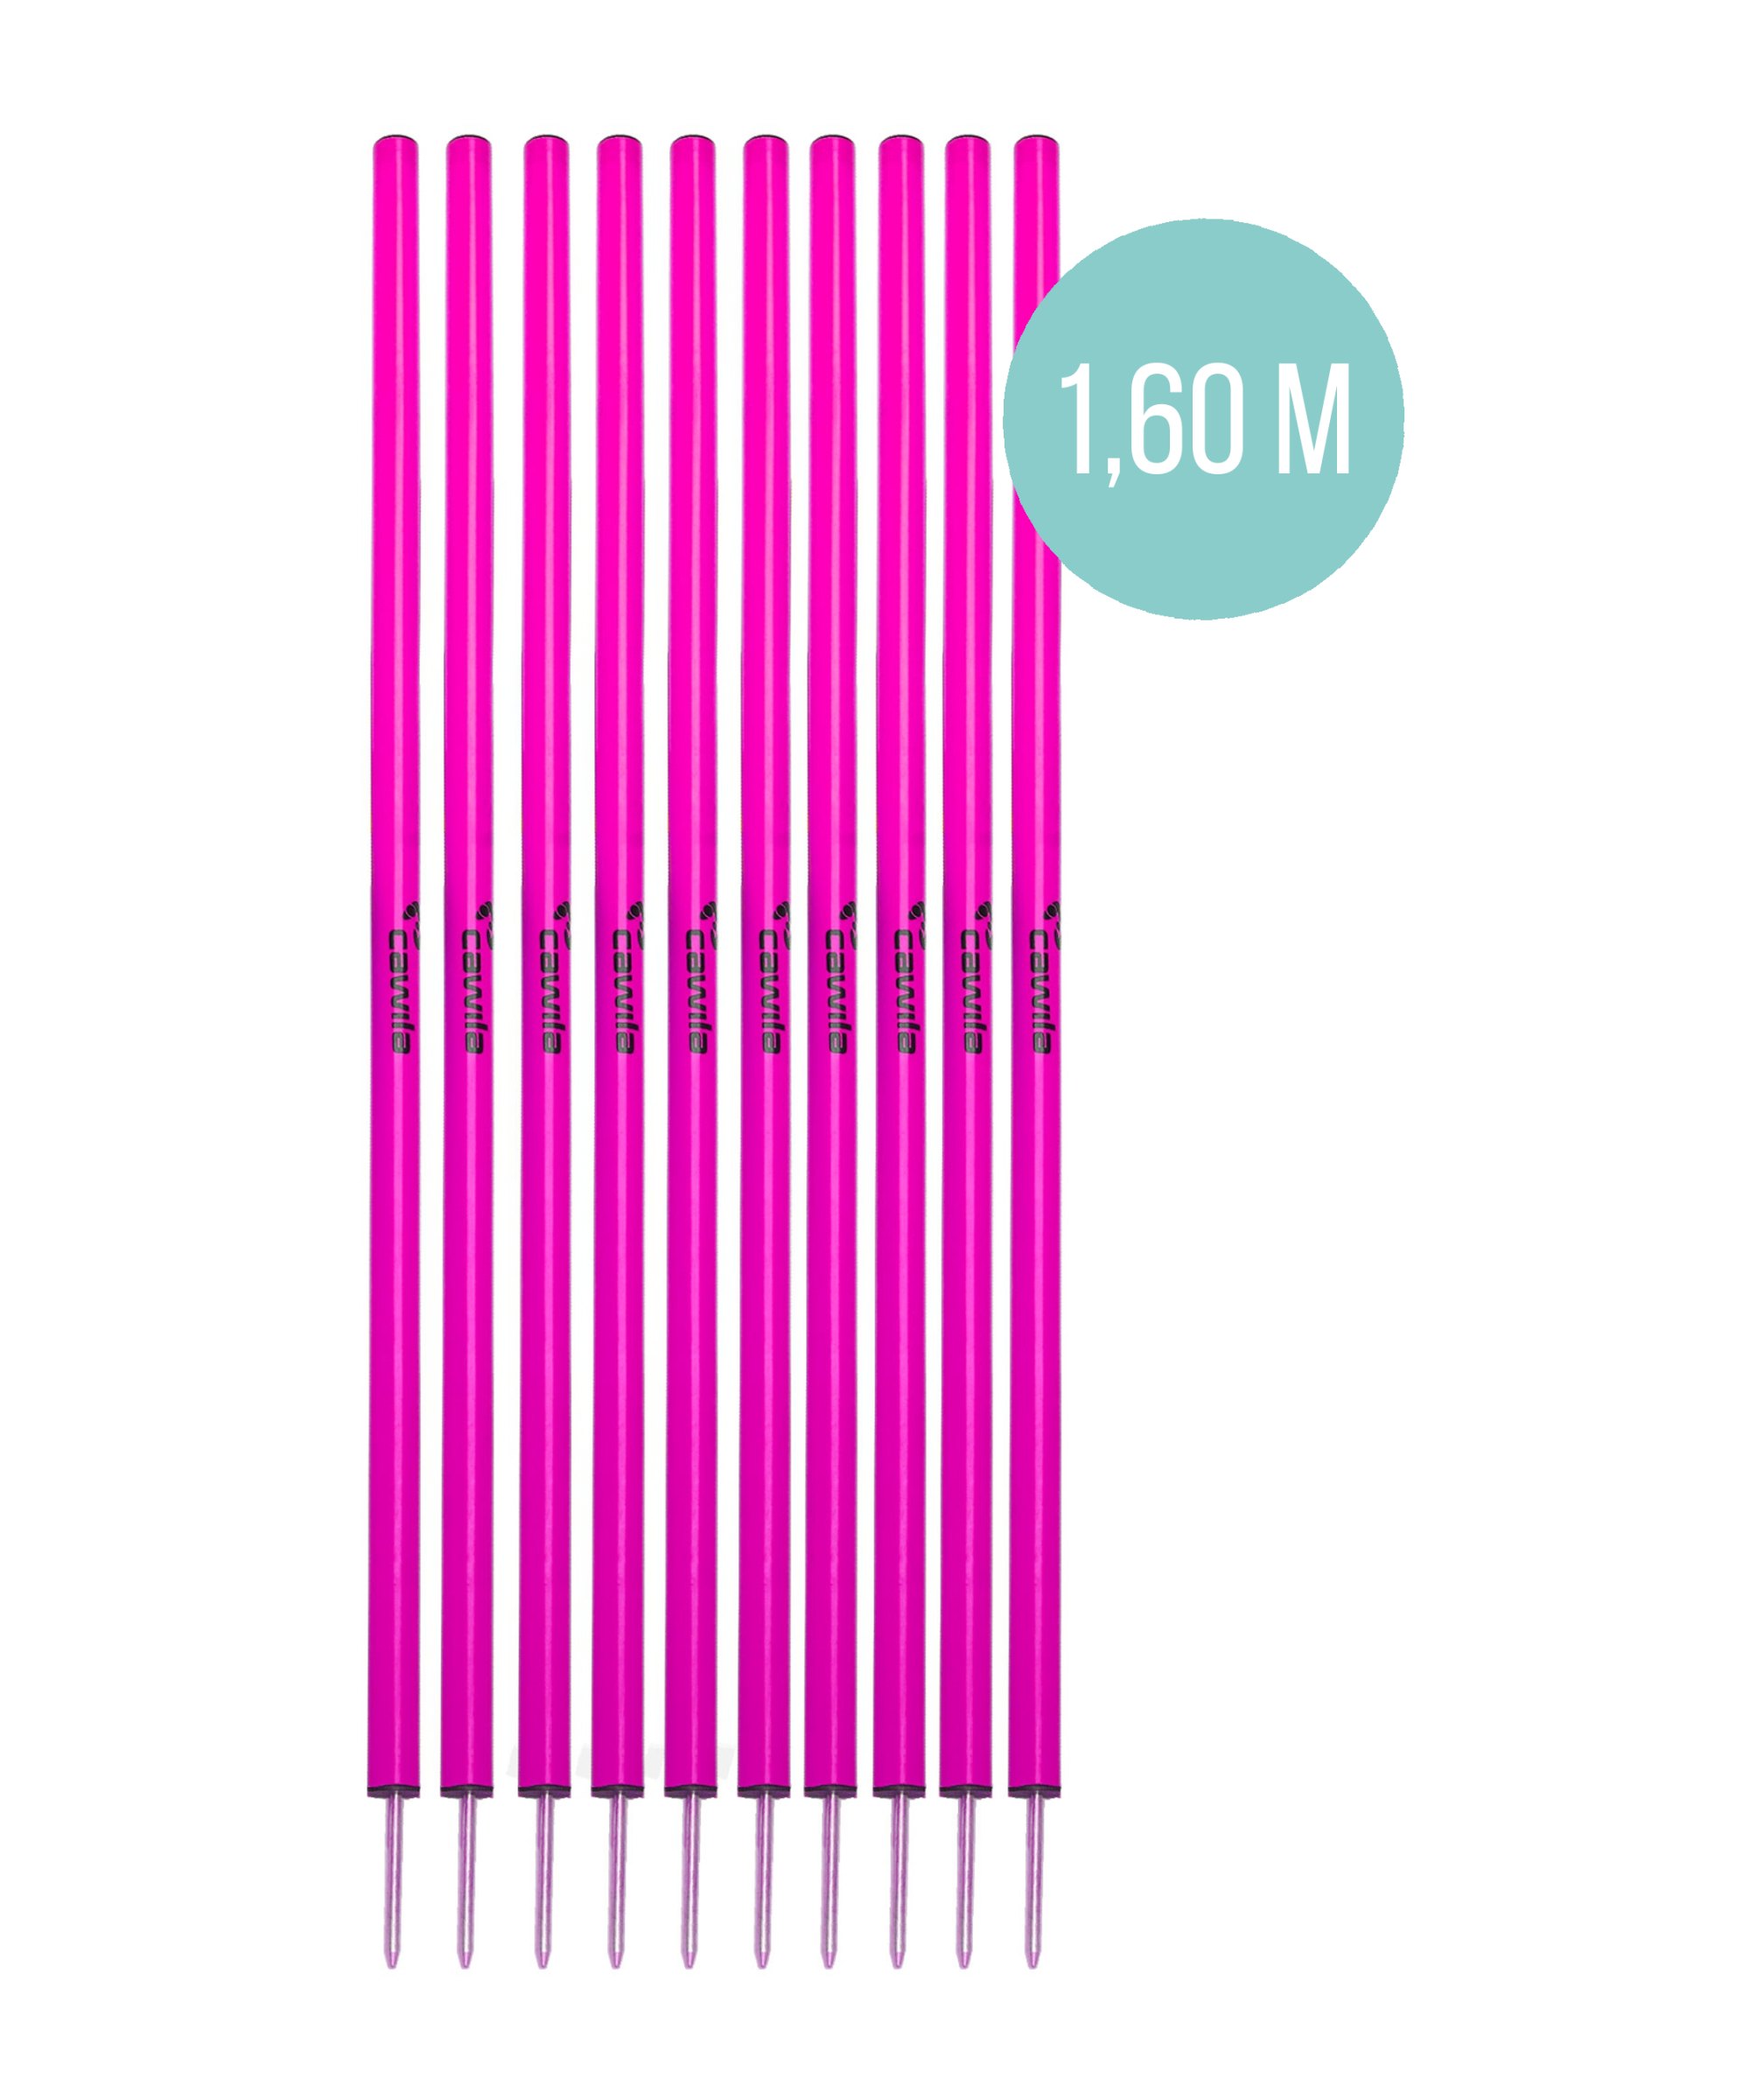 Cawila Slalomstange L (Ø 33 mm, 1,6m) Pink - pink